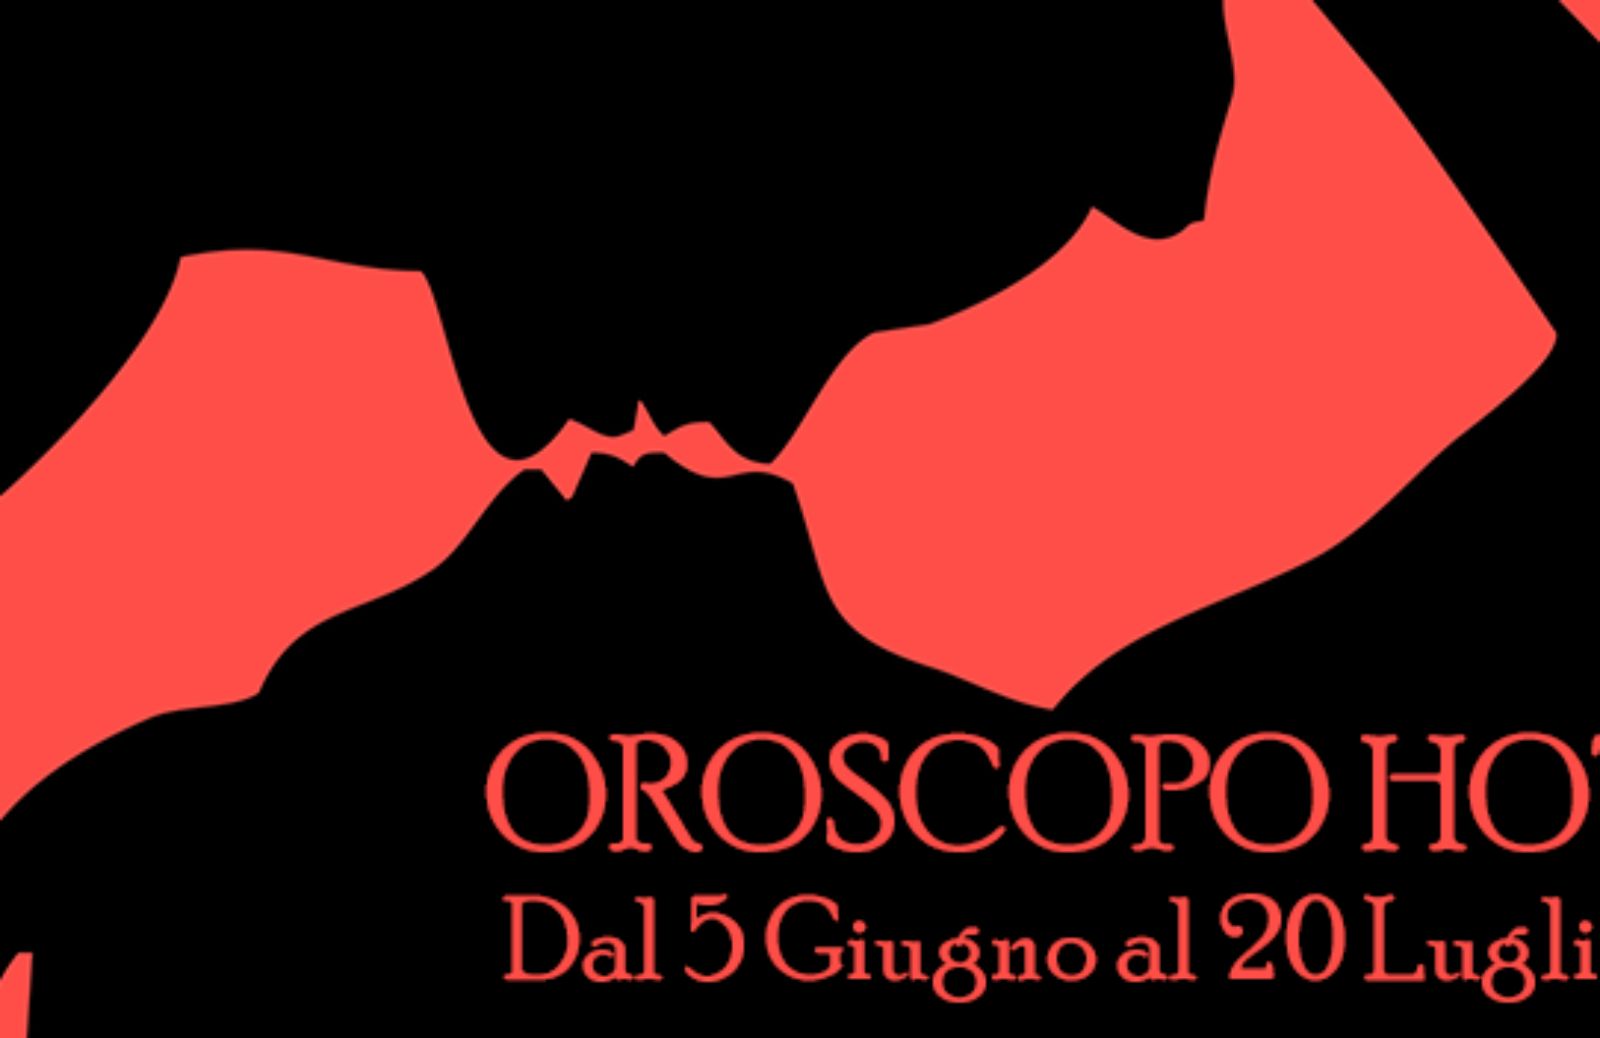 Oroscopo Hot: dal 5 giugno al 20 luglio